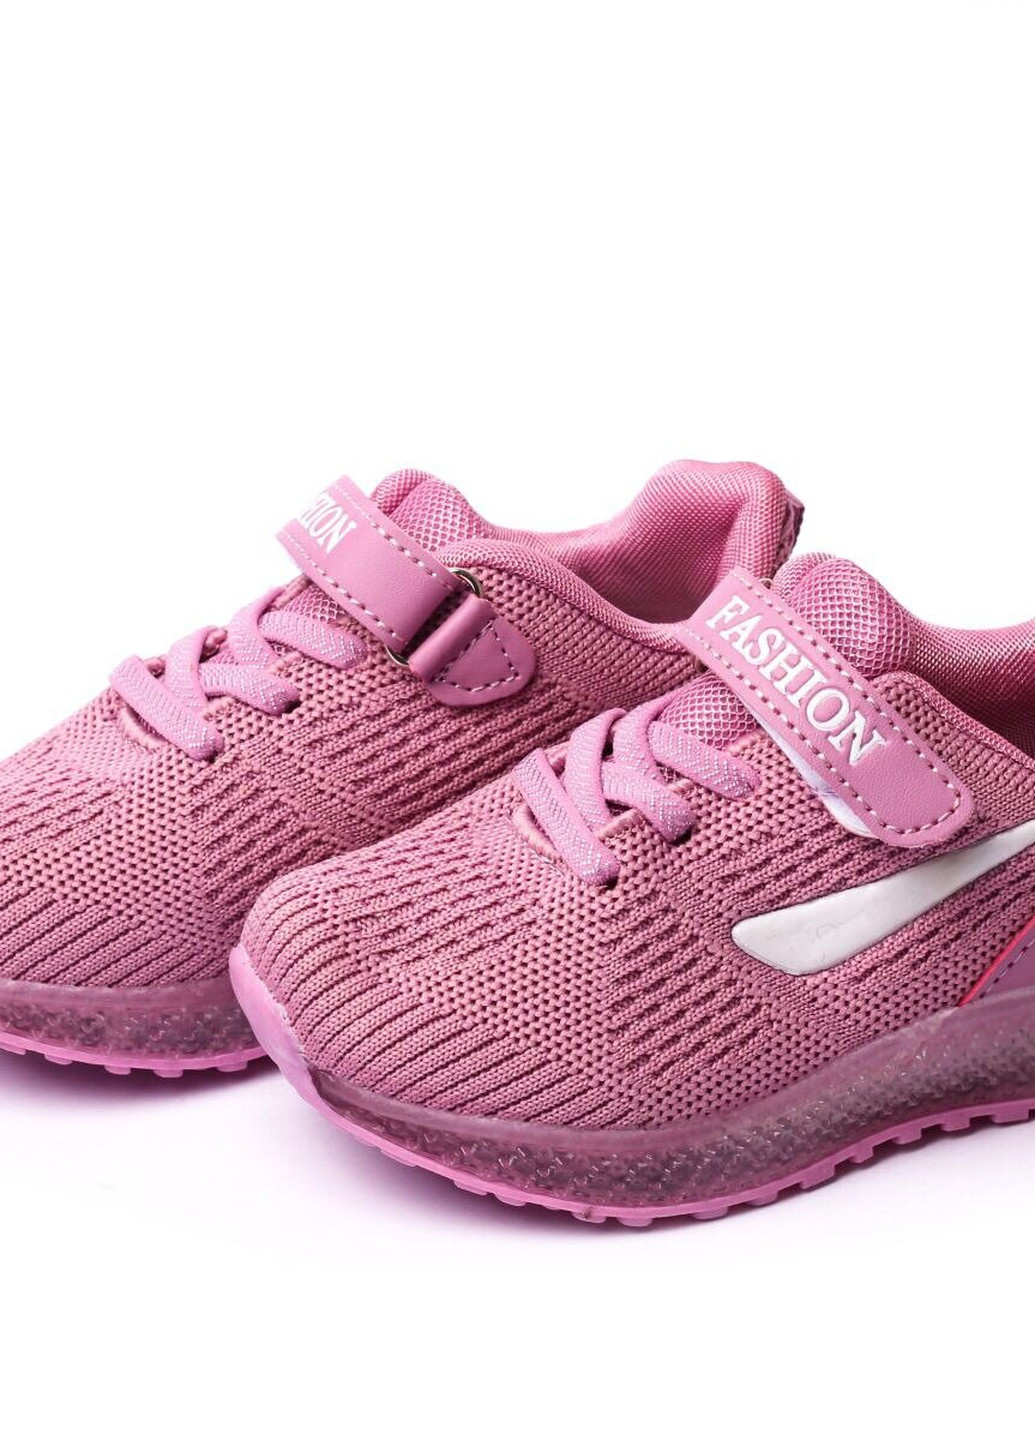 Фіолетові осінні кросівки дитячі, для дівчинки, 22 розмір 2000903162414 Erra